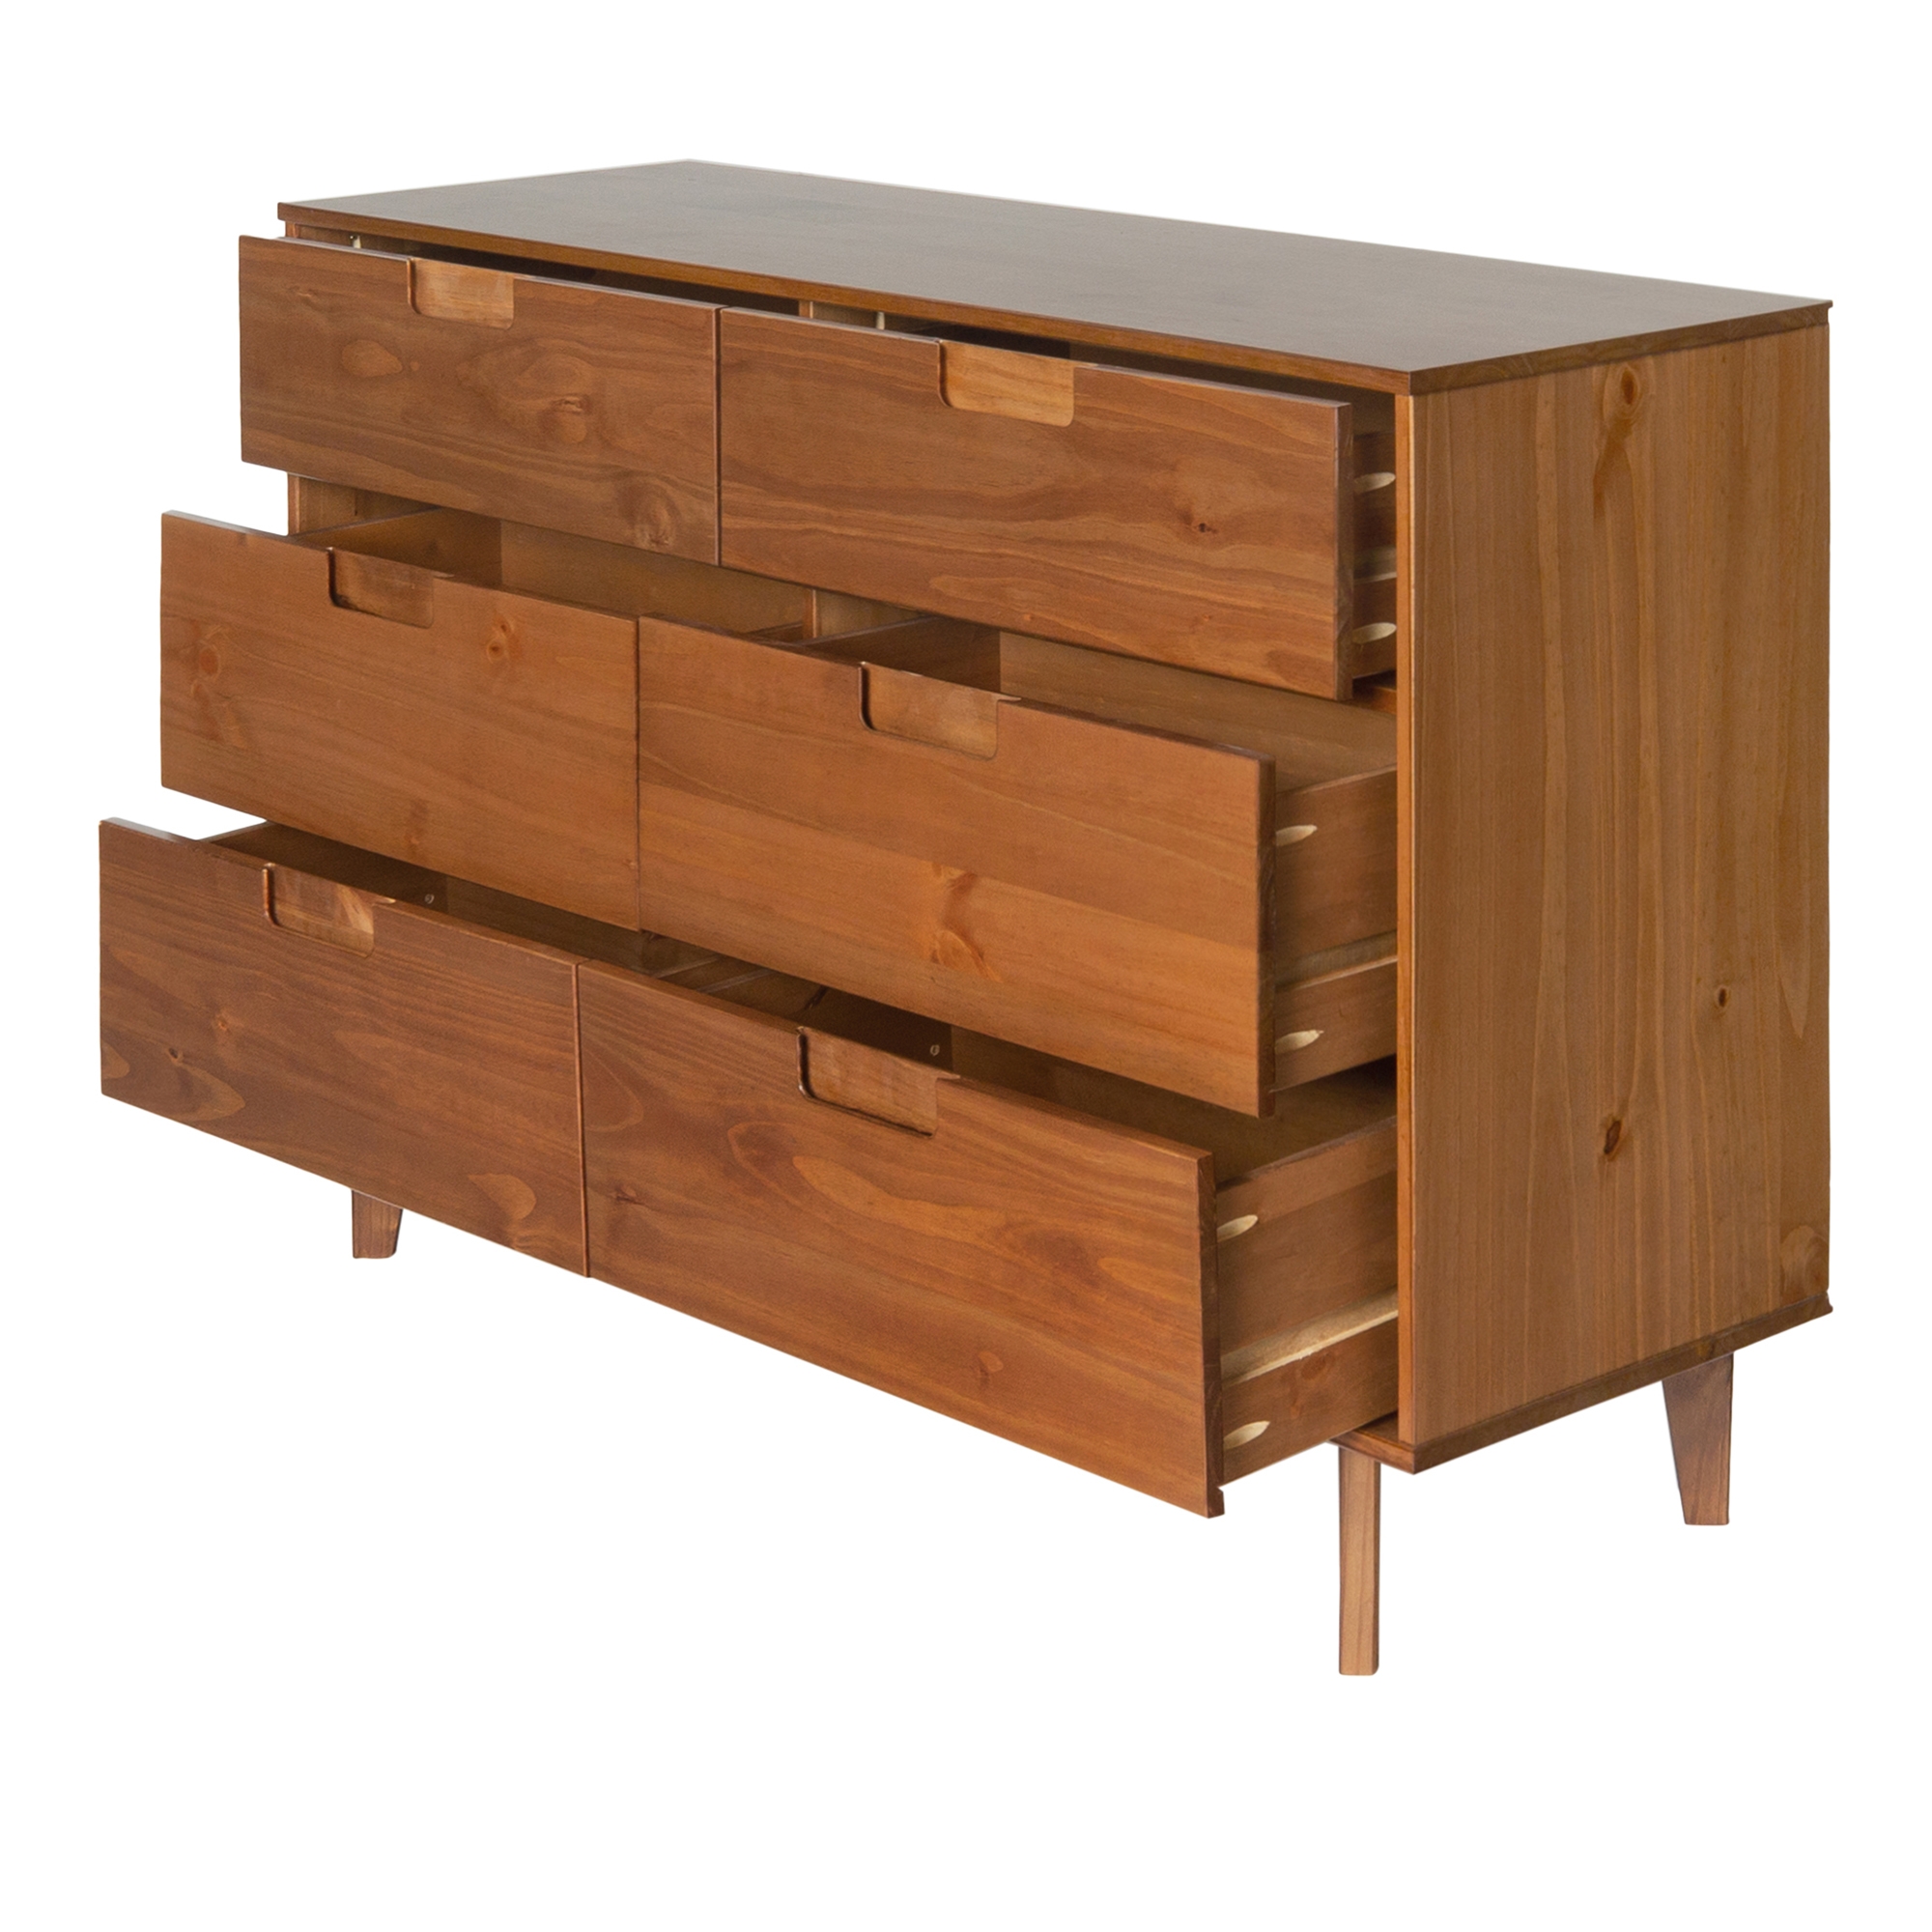 Sloane 6 Drawer Groove Handle Wood Dresser - Caramel - Image 3